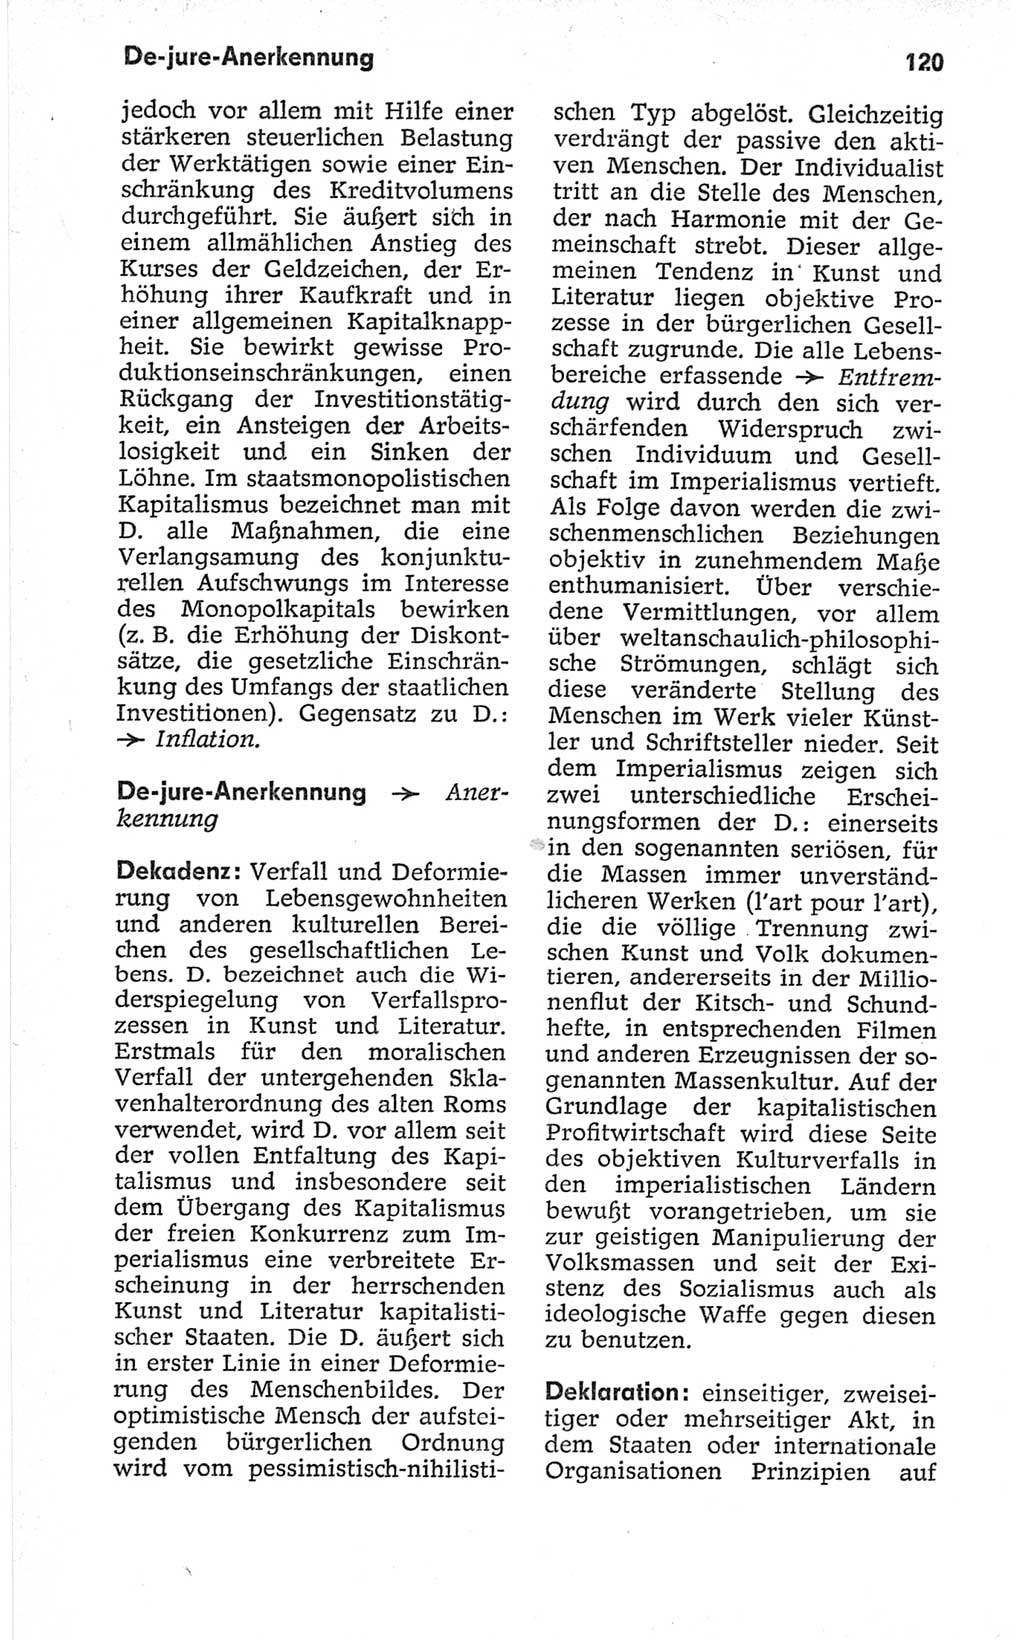 Kleines politisches Wörterbuch [Deutsche Demokratische Republik (DDR)] 1967, Seite 120 (Kl. pol. Wb. DDR 1967, S. 120)